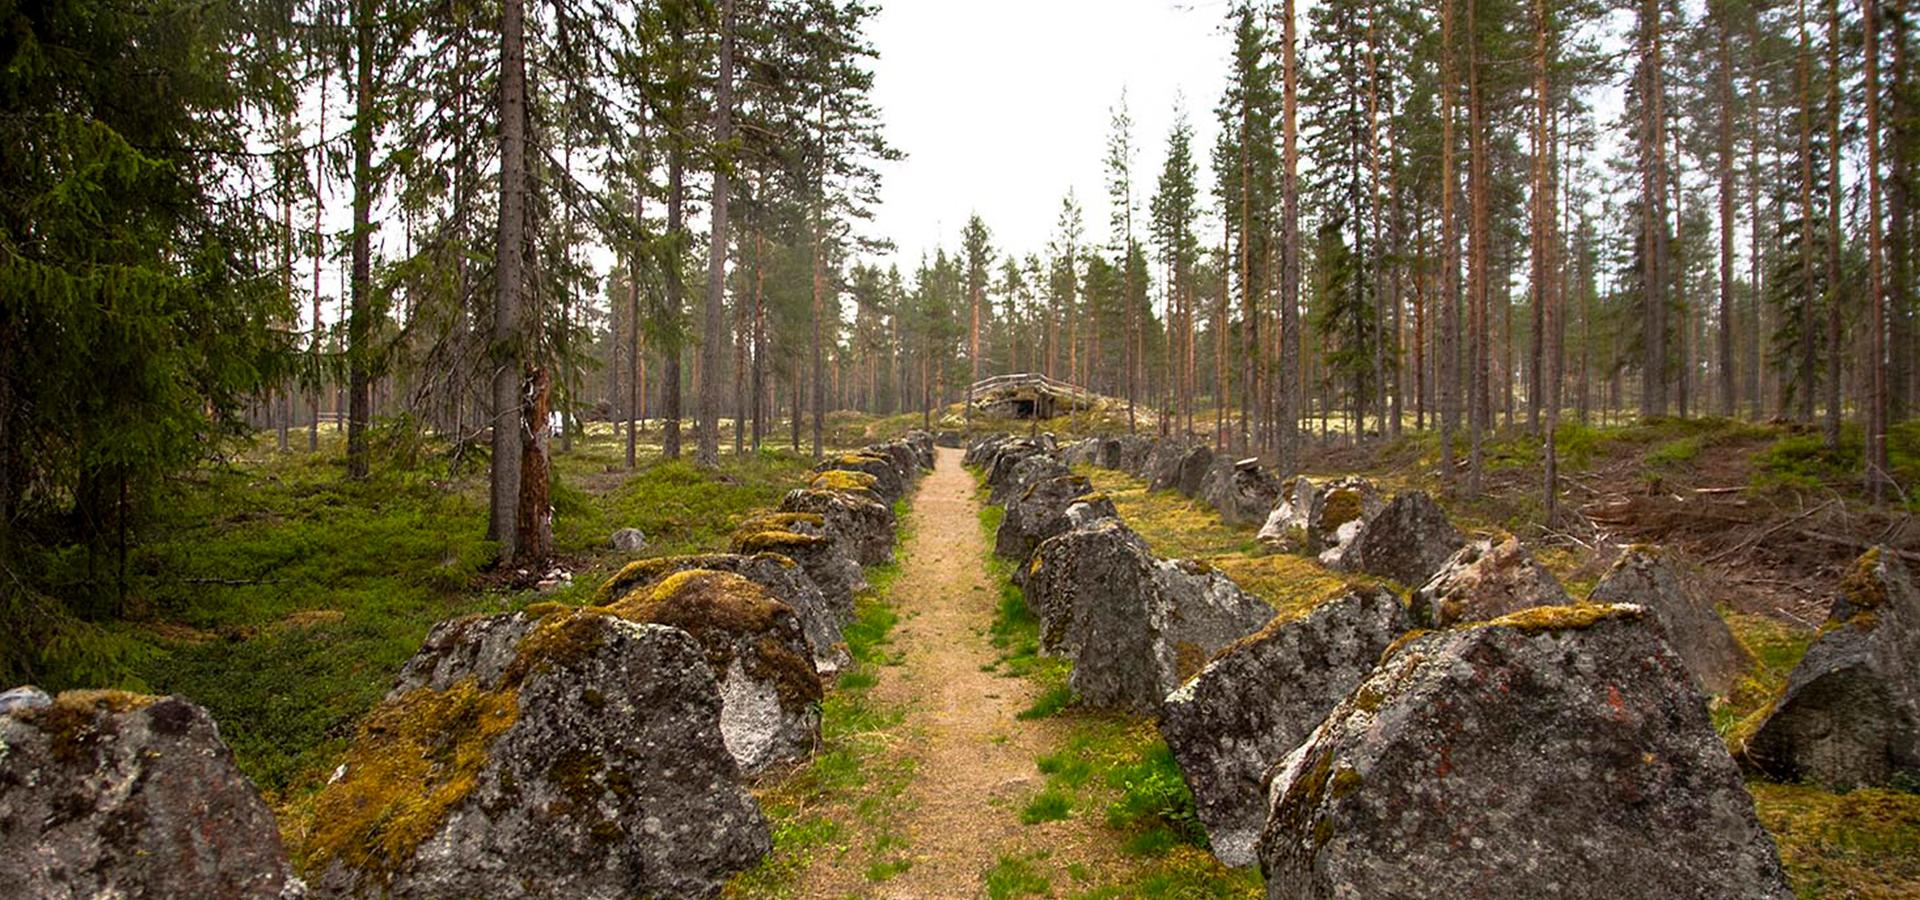 En skogsstig med stenar och höga tallar.